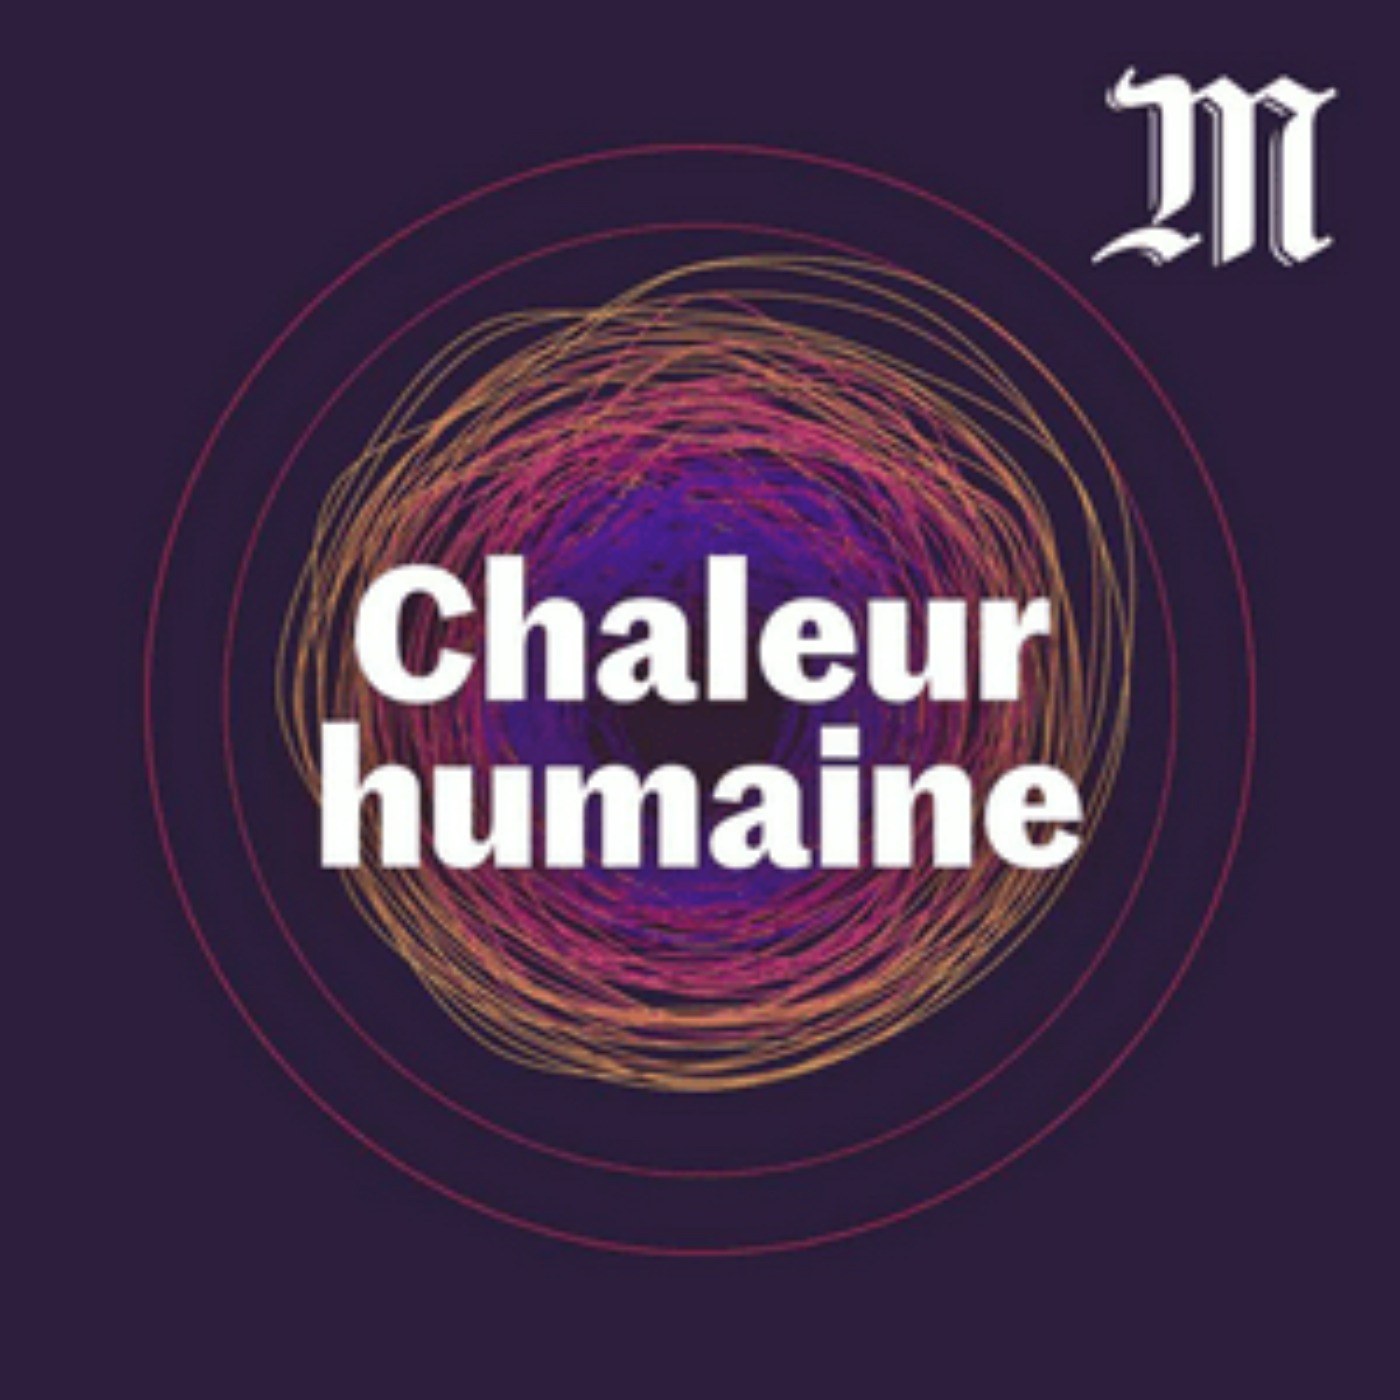 La France est-elle prête à faire face au réchauffement climatique ? (EN PUBLIC)